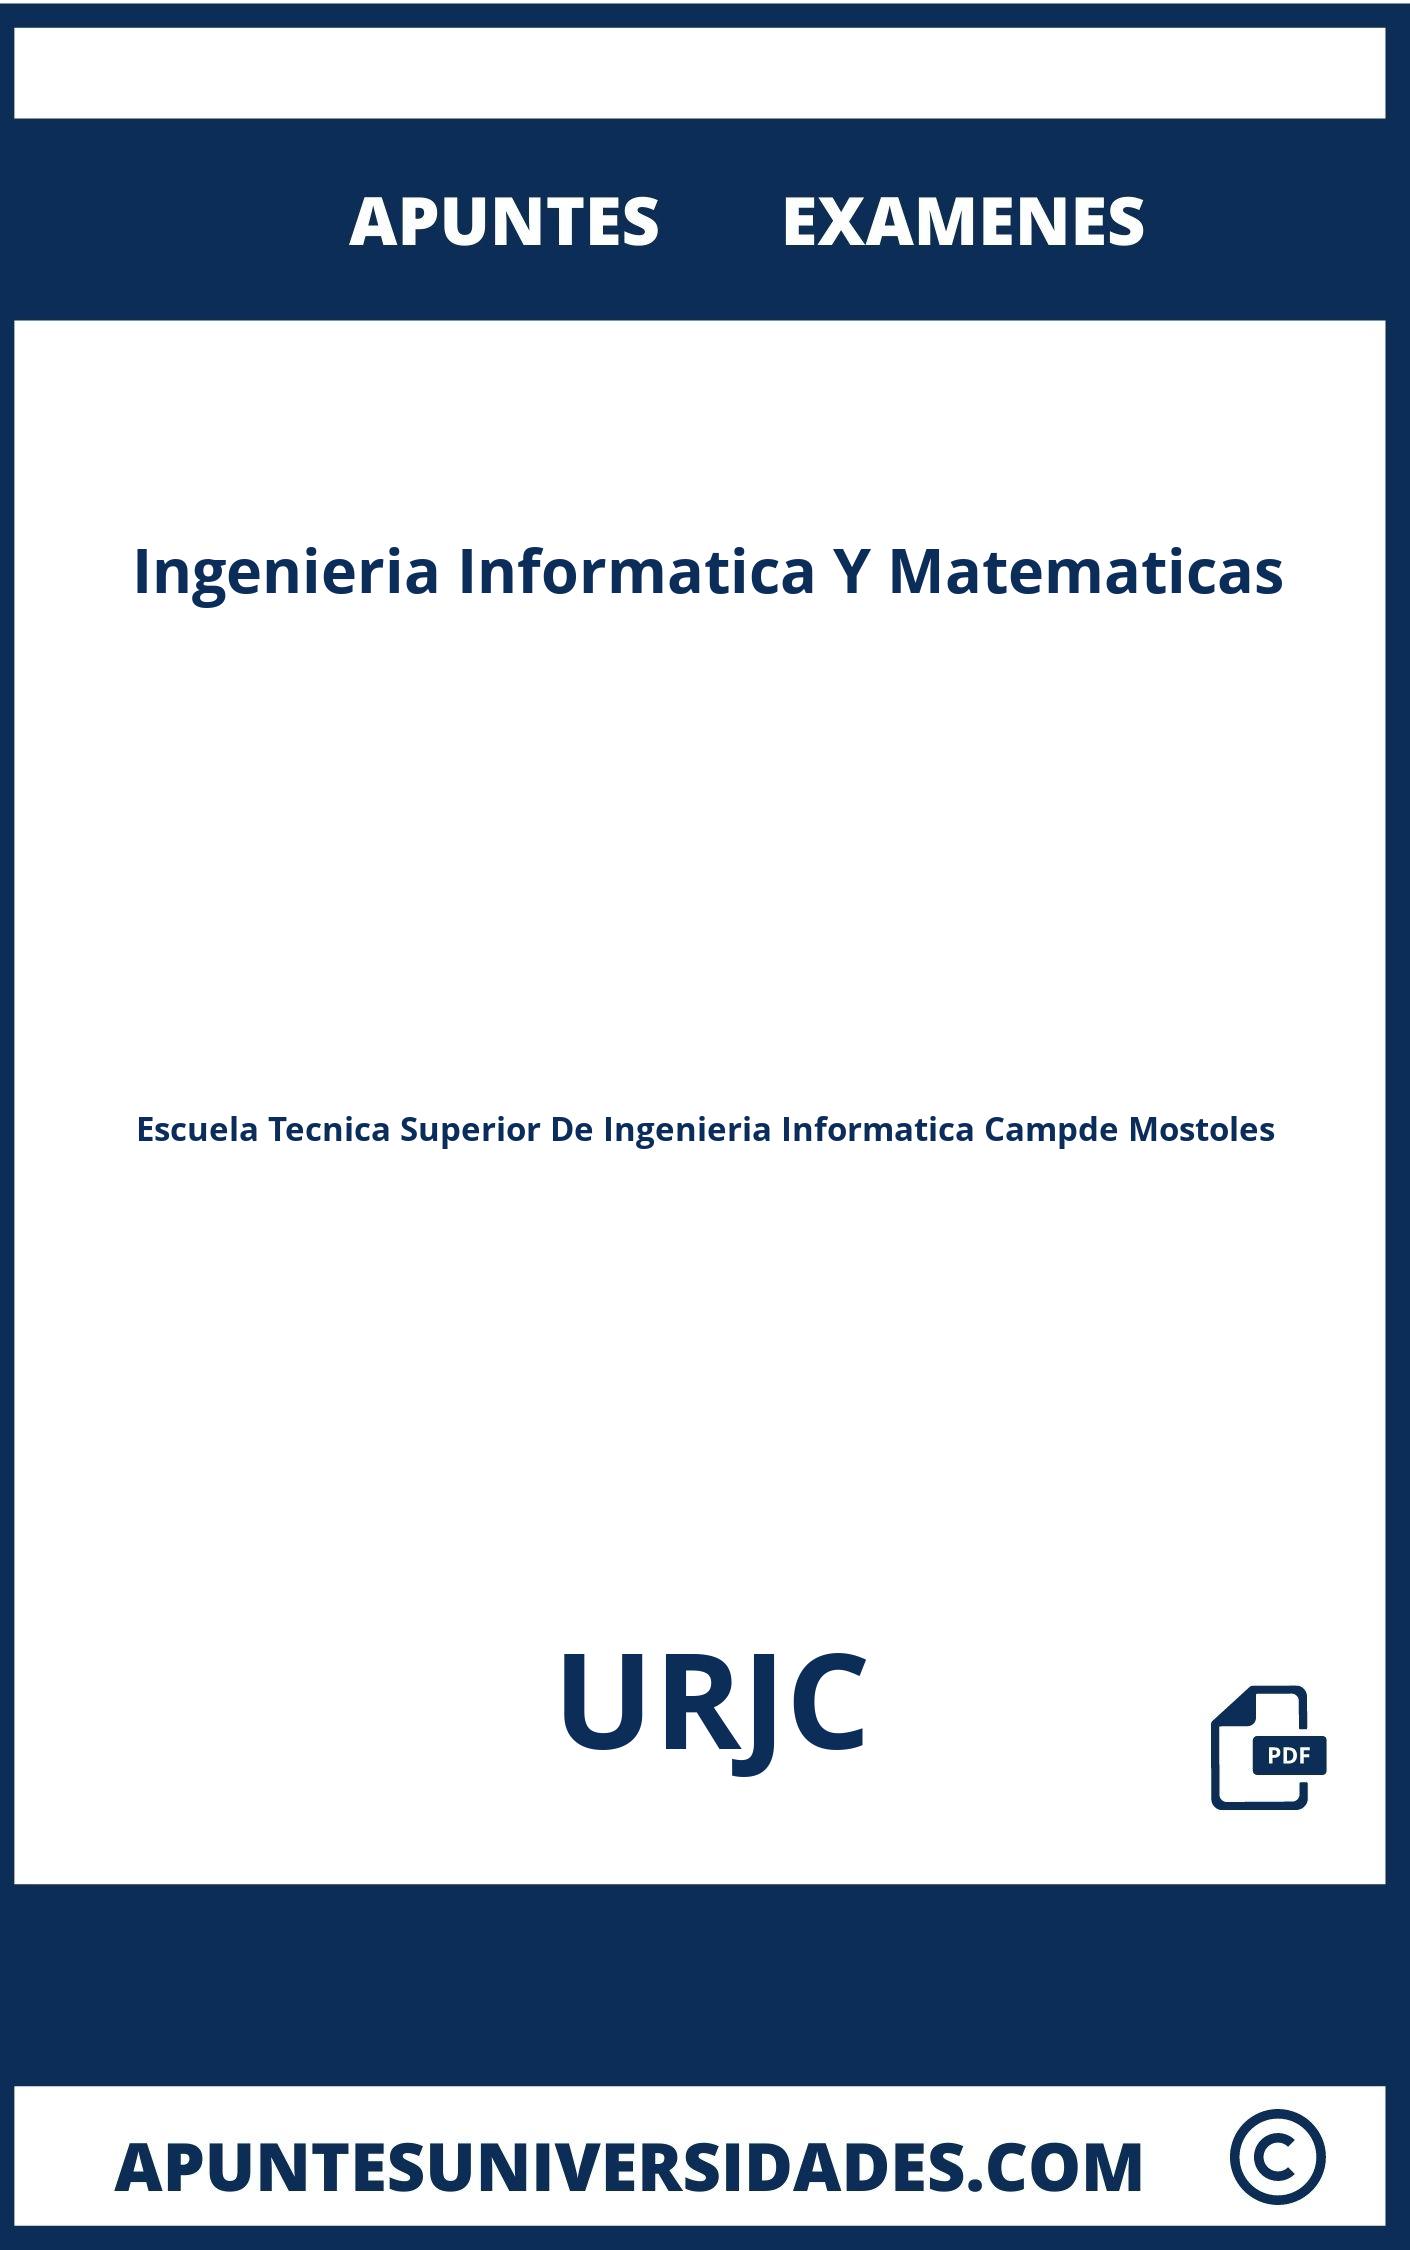 Apuntes y Examenes Ingenieria Informatica Y Matematicas URJC